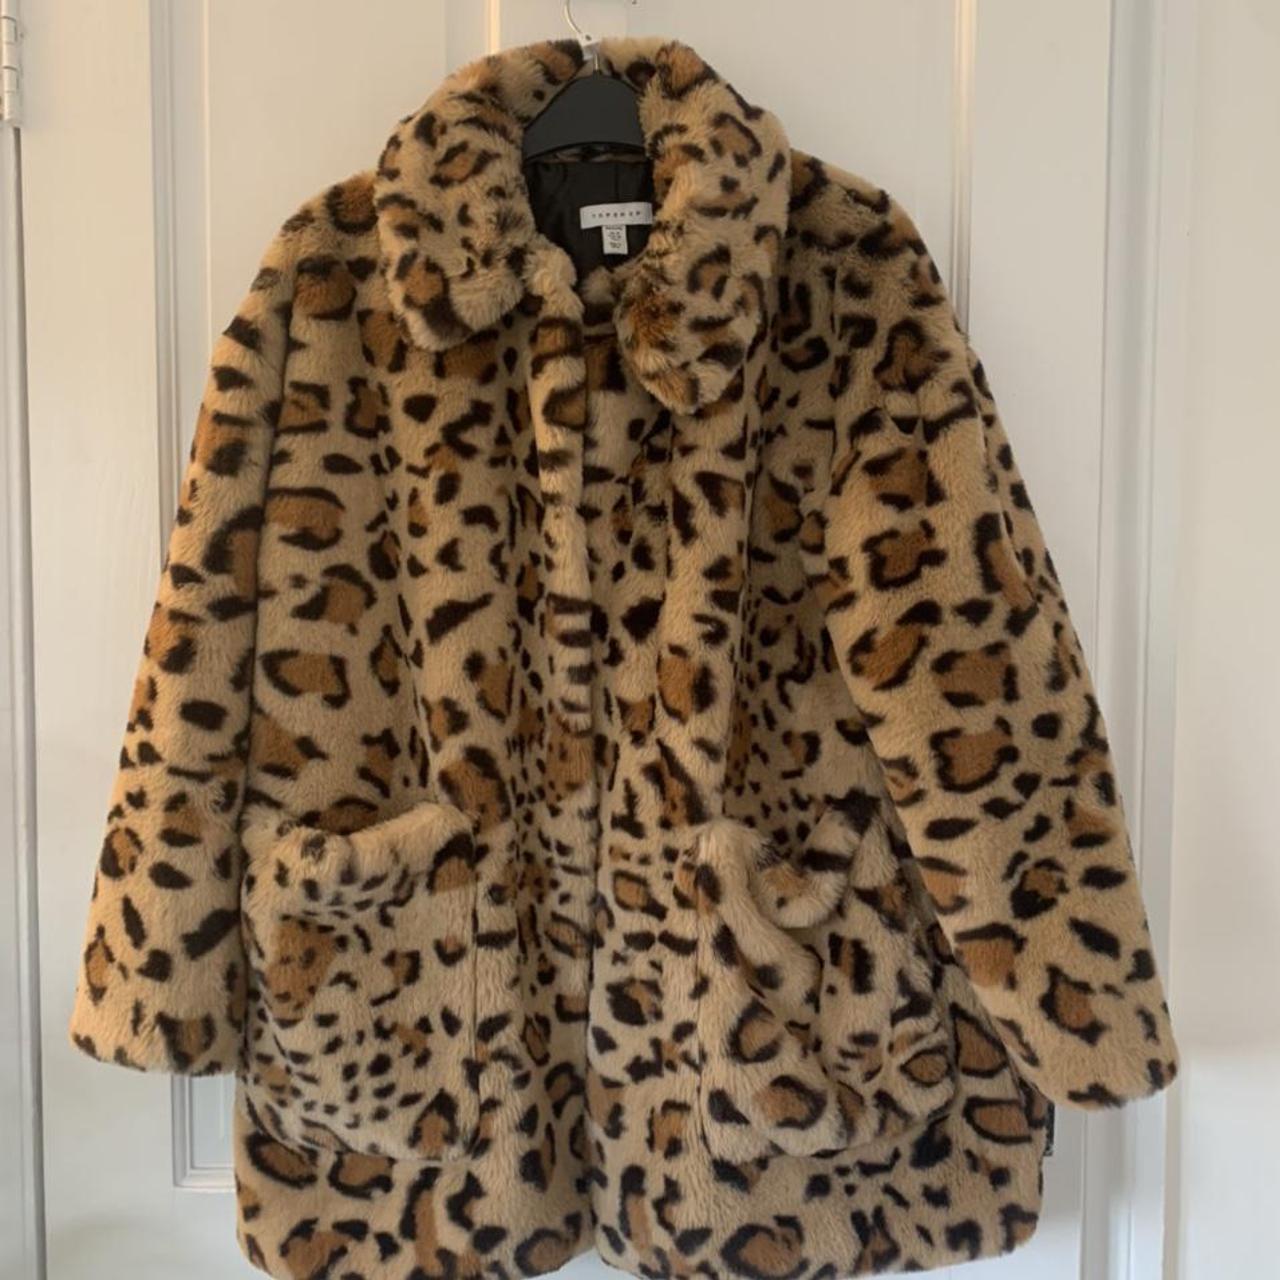 Topshop leopard print faux fur coat. Size 10 petite... - Depop